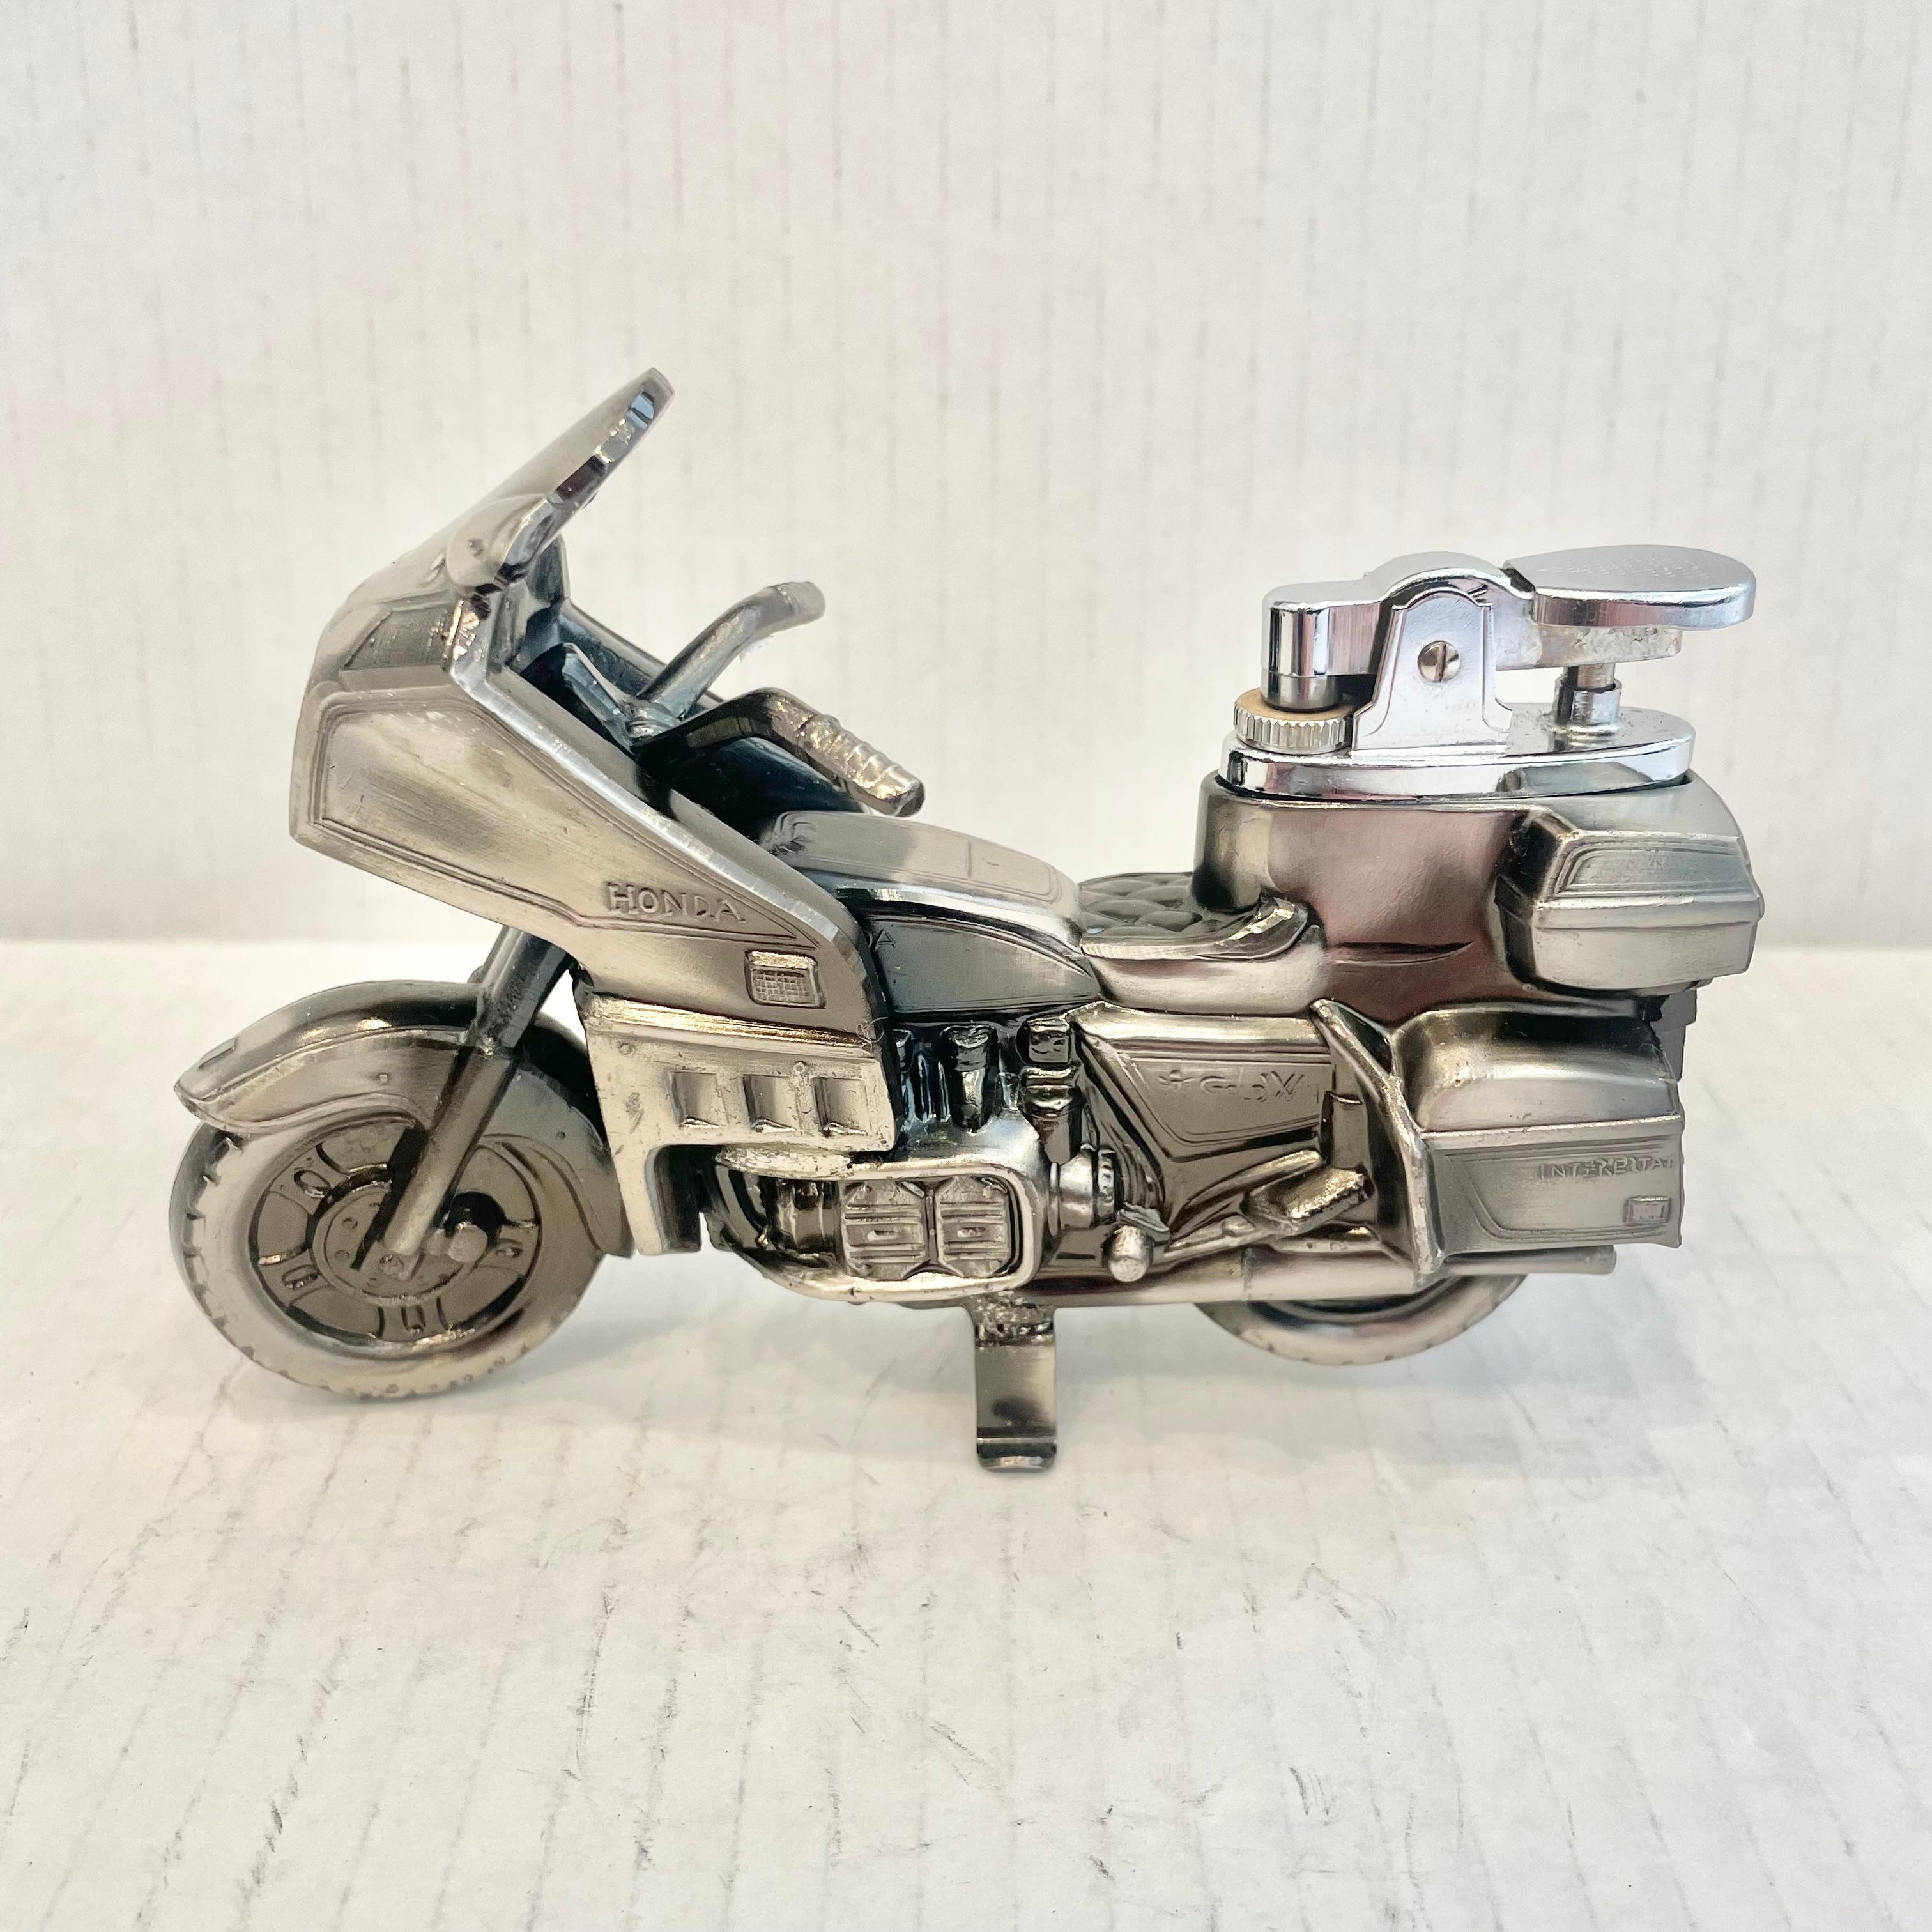 Cooles Vintage-Tischfeuerzeug in Form eines Honda Gold Wing Motorrads. Vollständig aus Metall mit einem hohlen Körper. Schöne brünierte Silber Farbe mit komplizierten Details. Ein cooles Accessoire für den Tabakkonsum und ein Stück Unterhaltung.